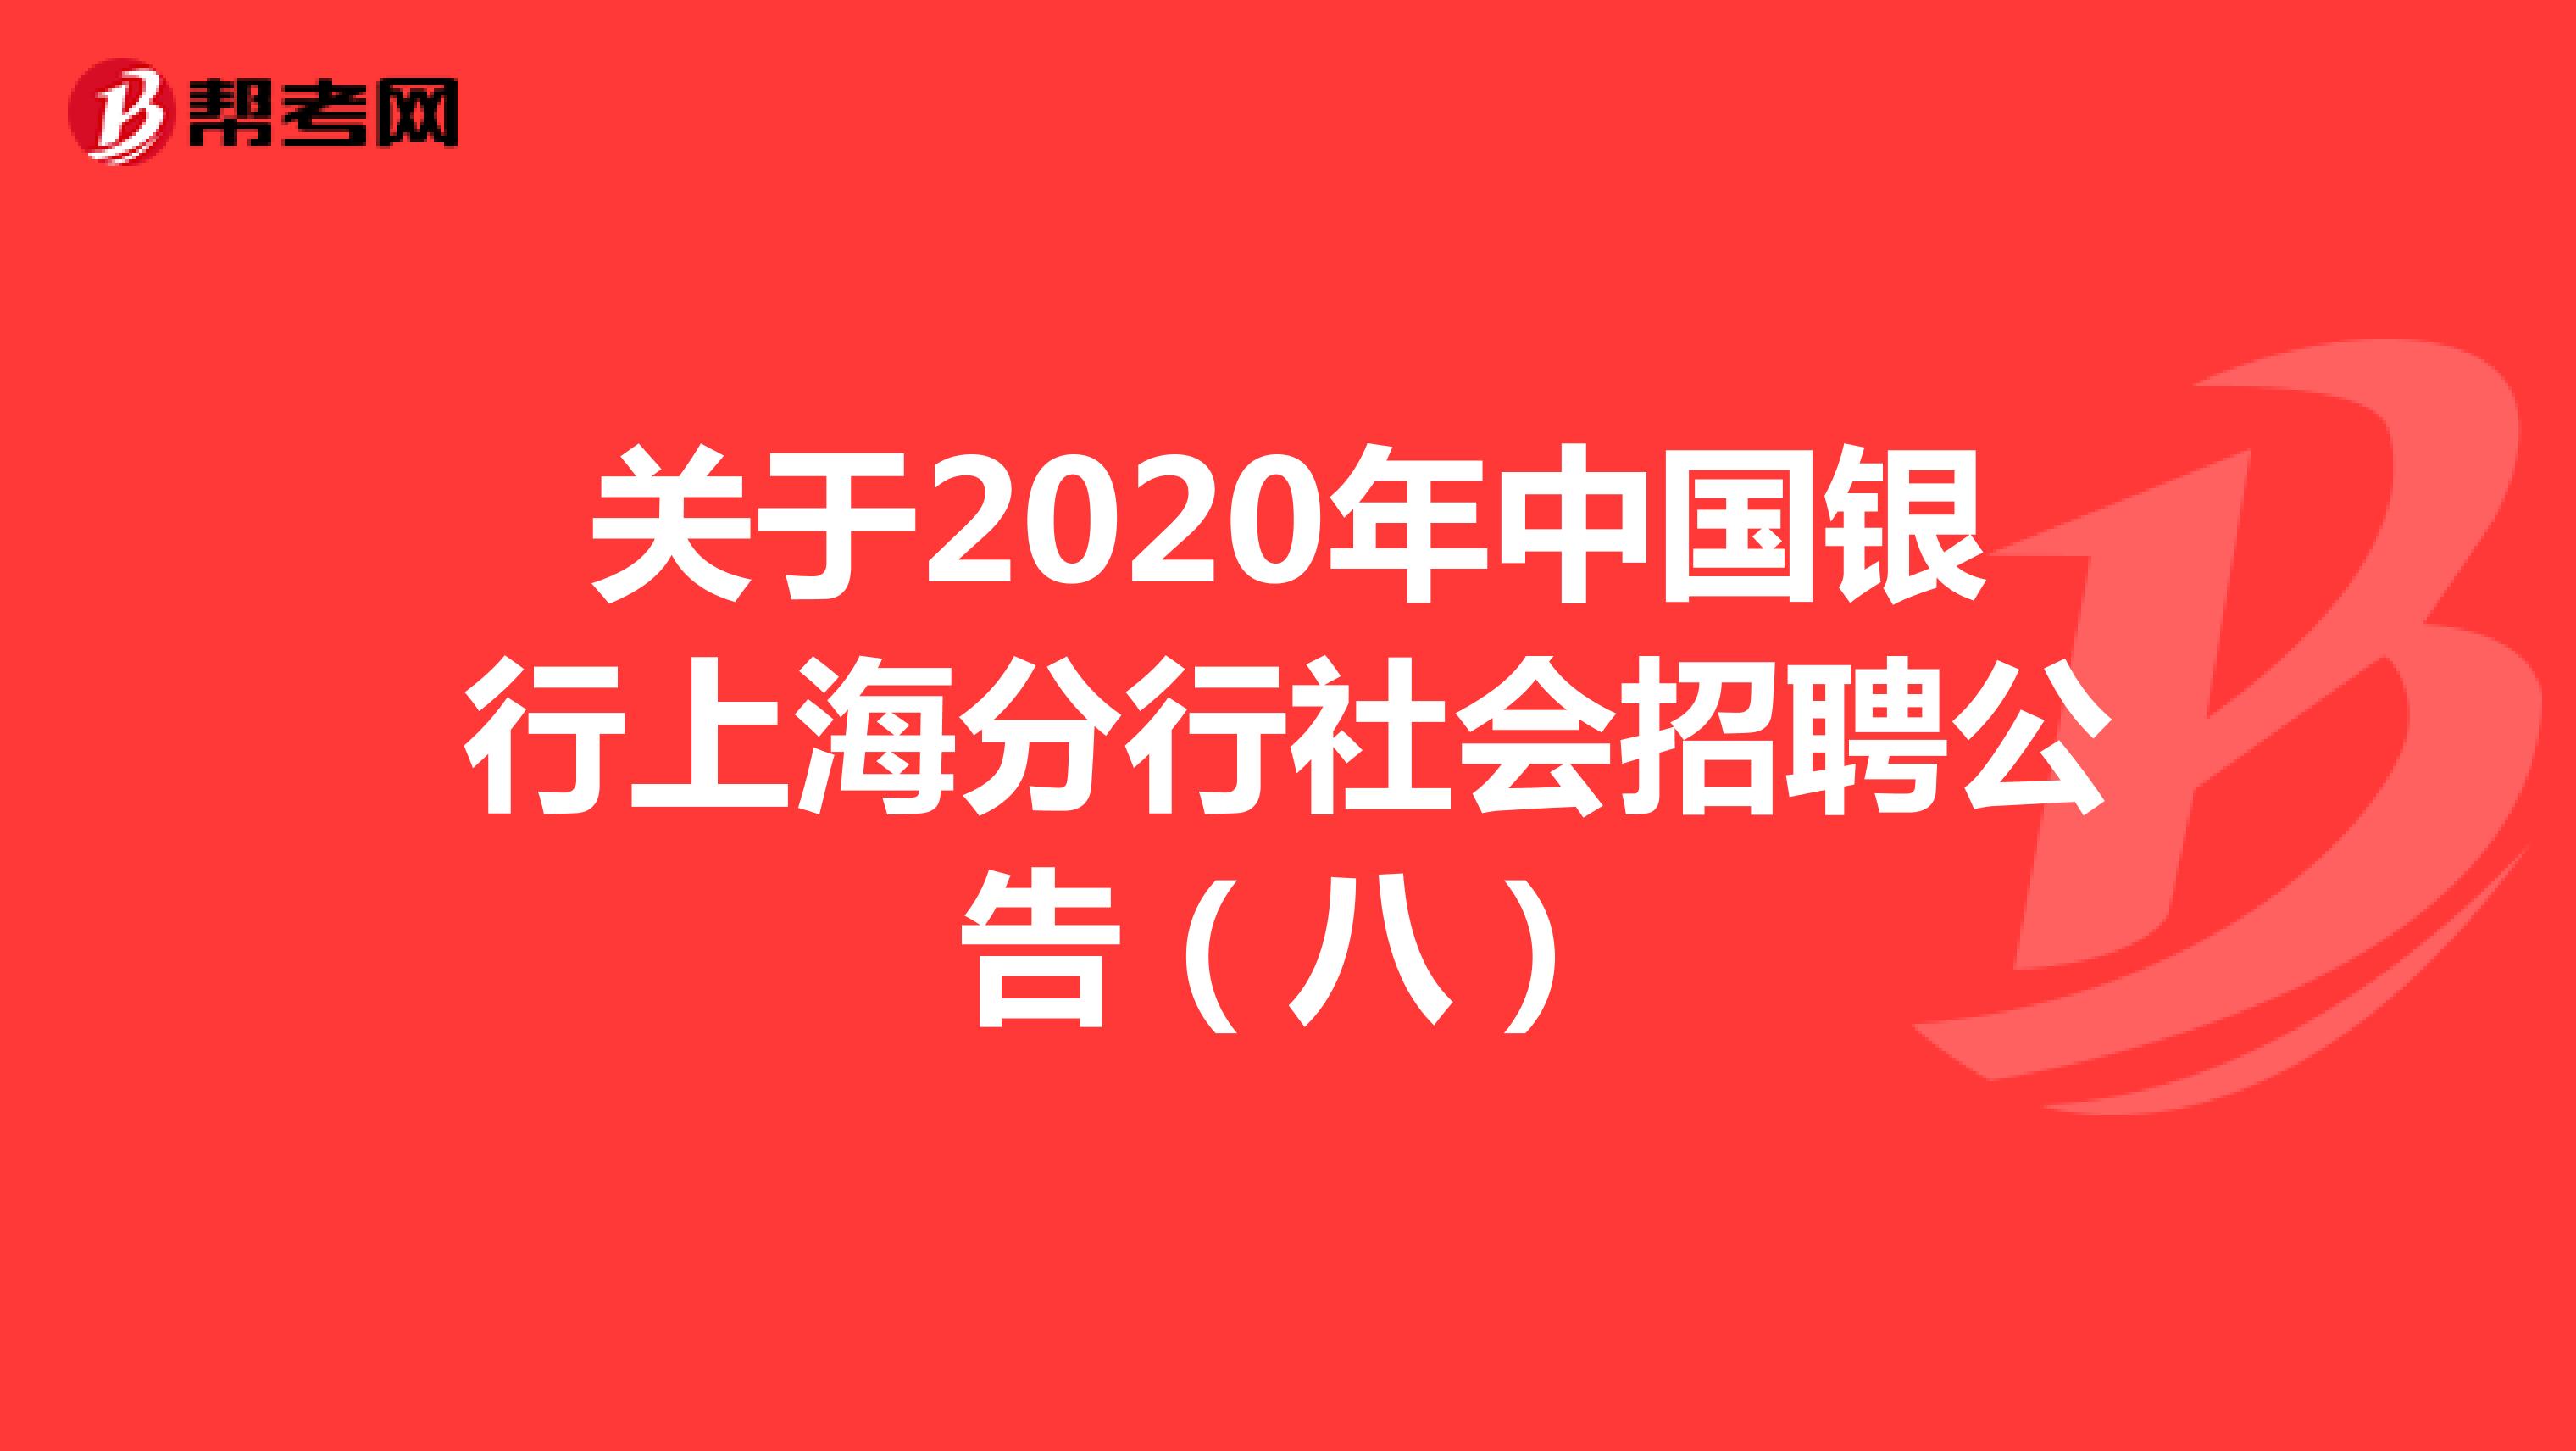 关于2020年中国银行上海分行社会招聘公告（八）